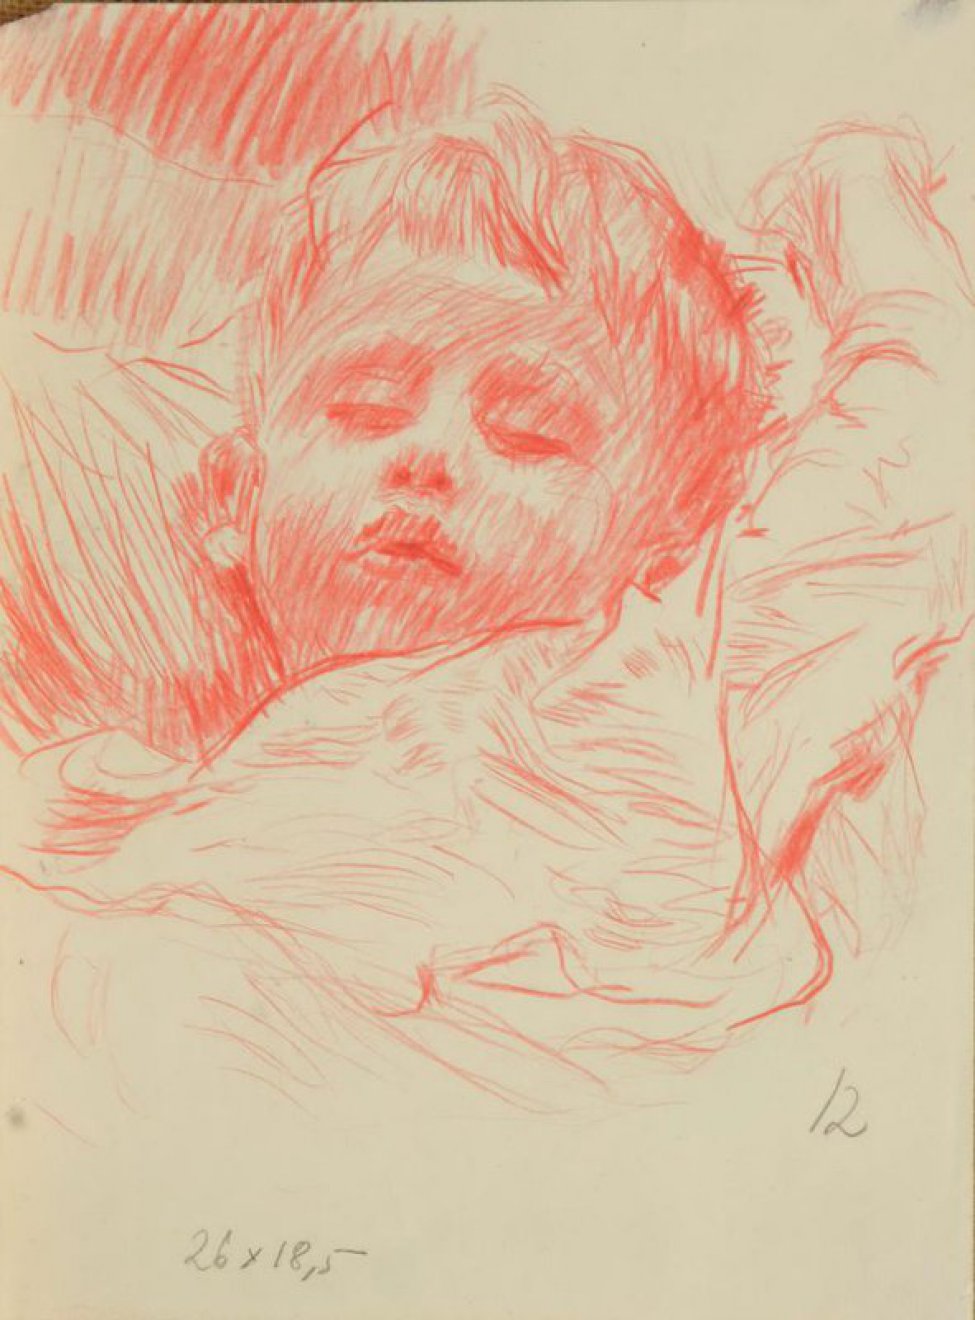 Изображен спящий мальчик с закинутой за голову левой рукой.